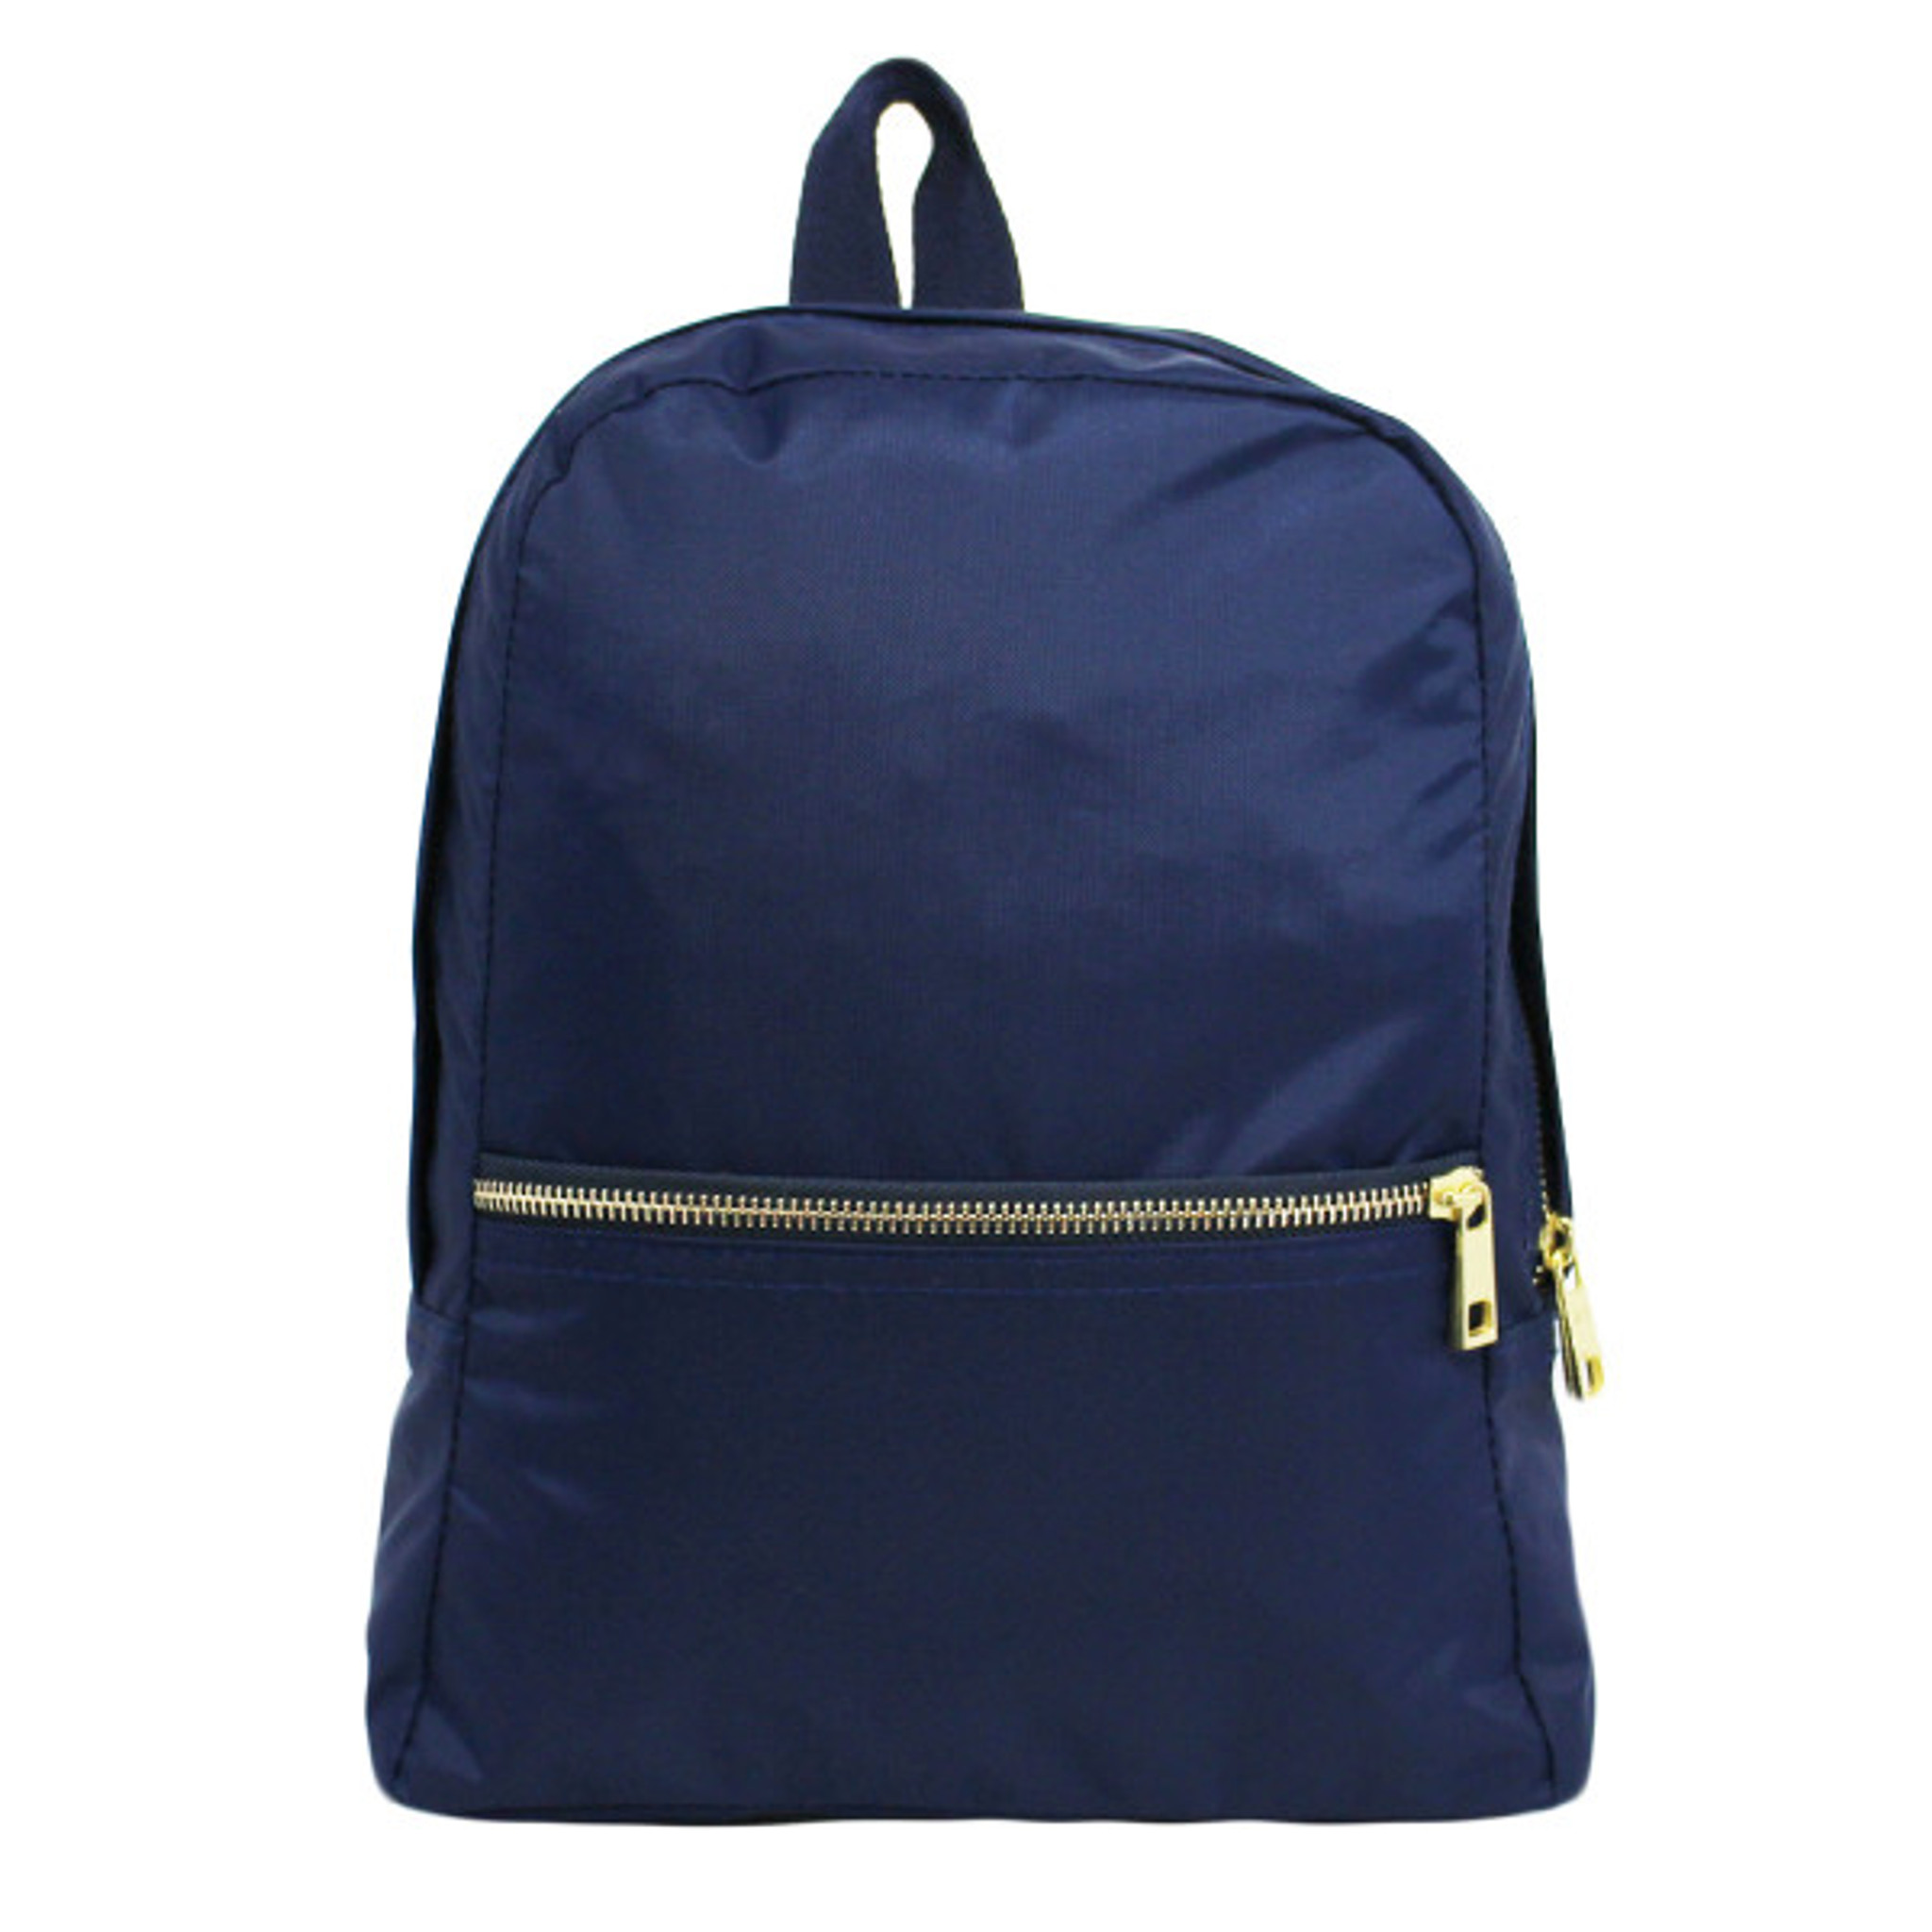 Small Backpack - Navy Nylon